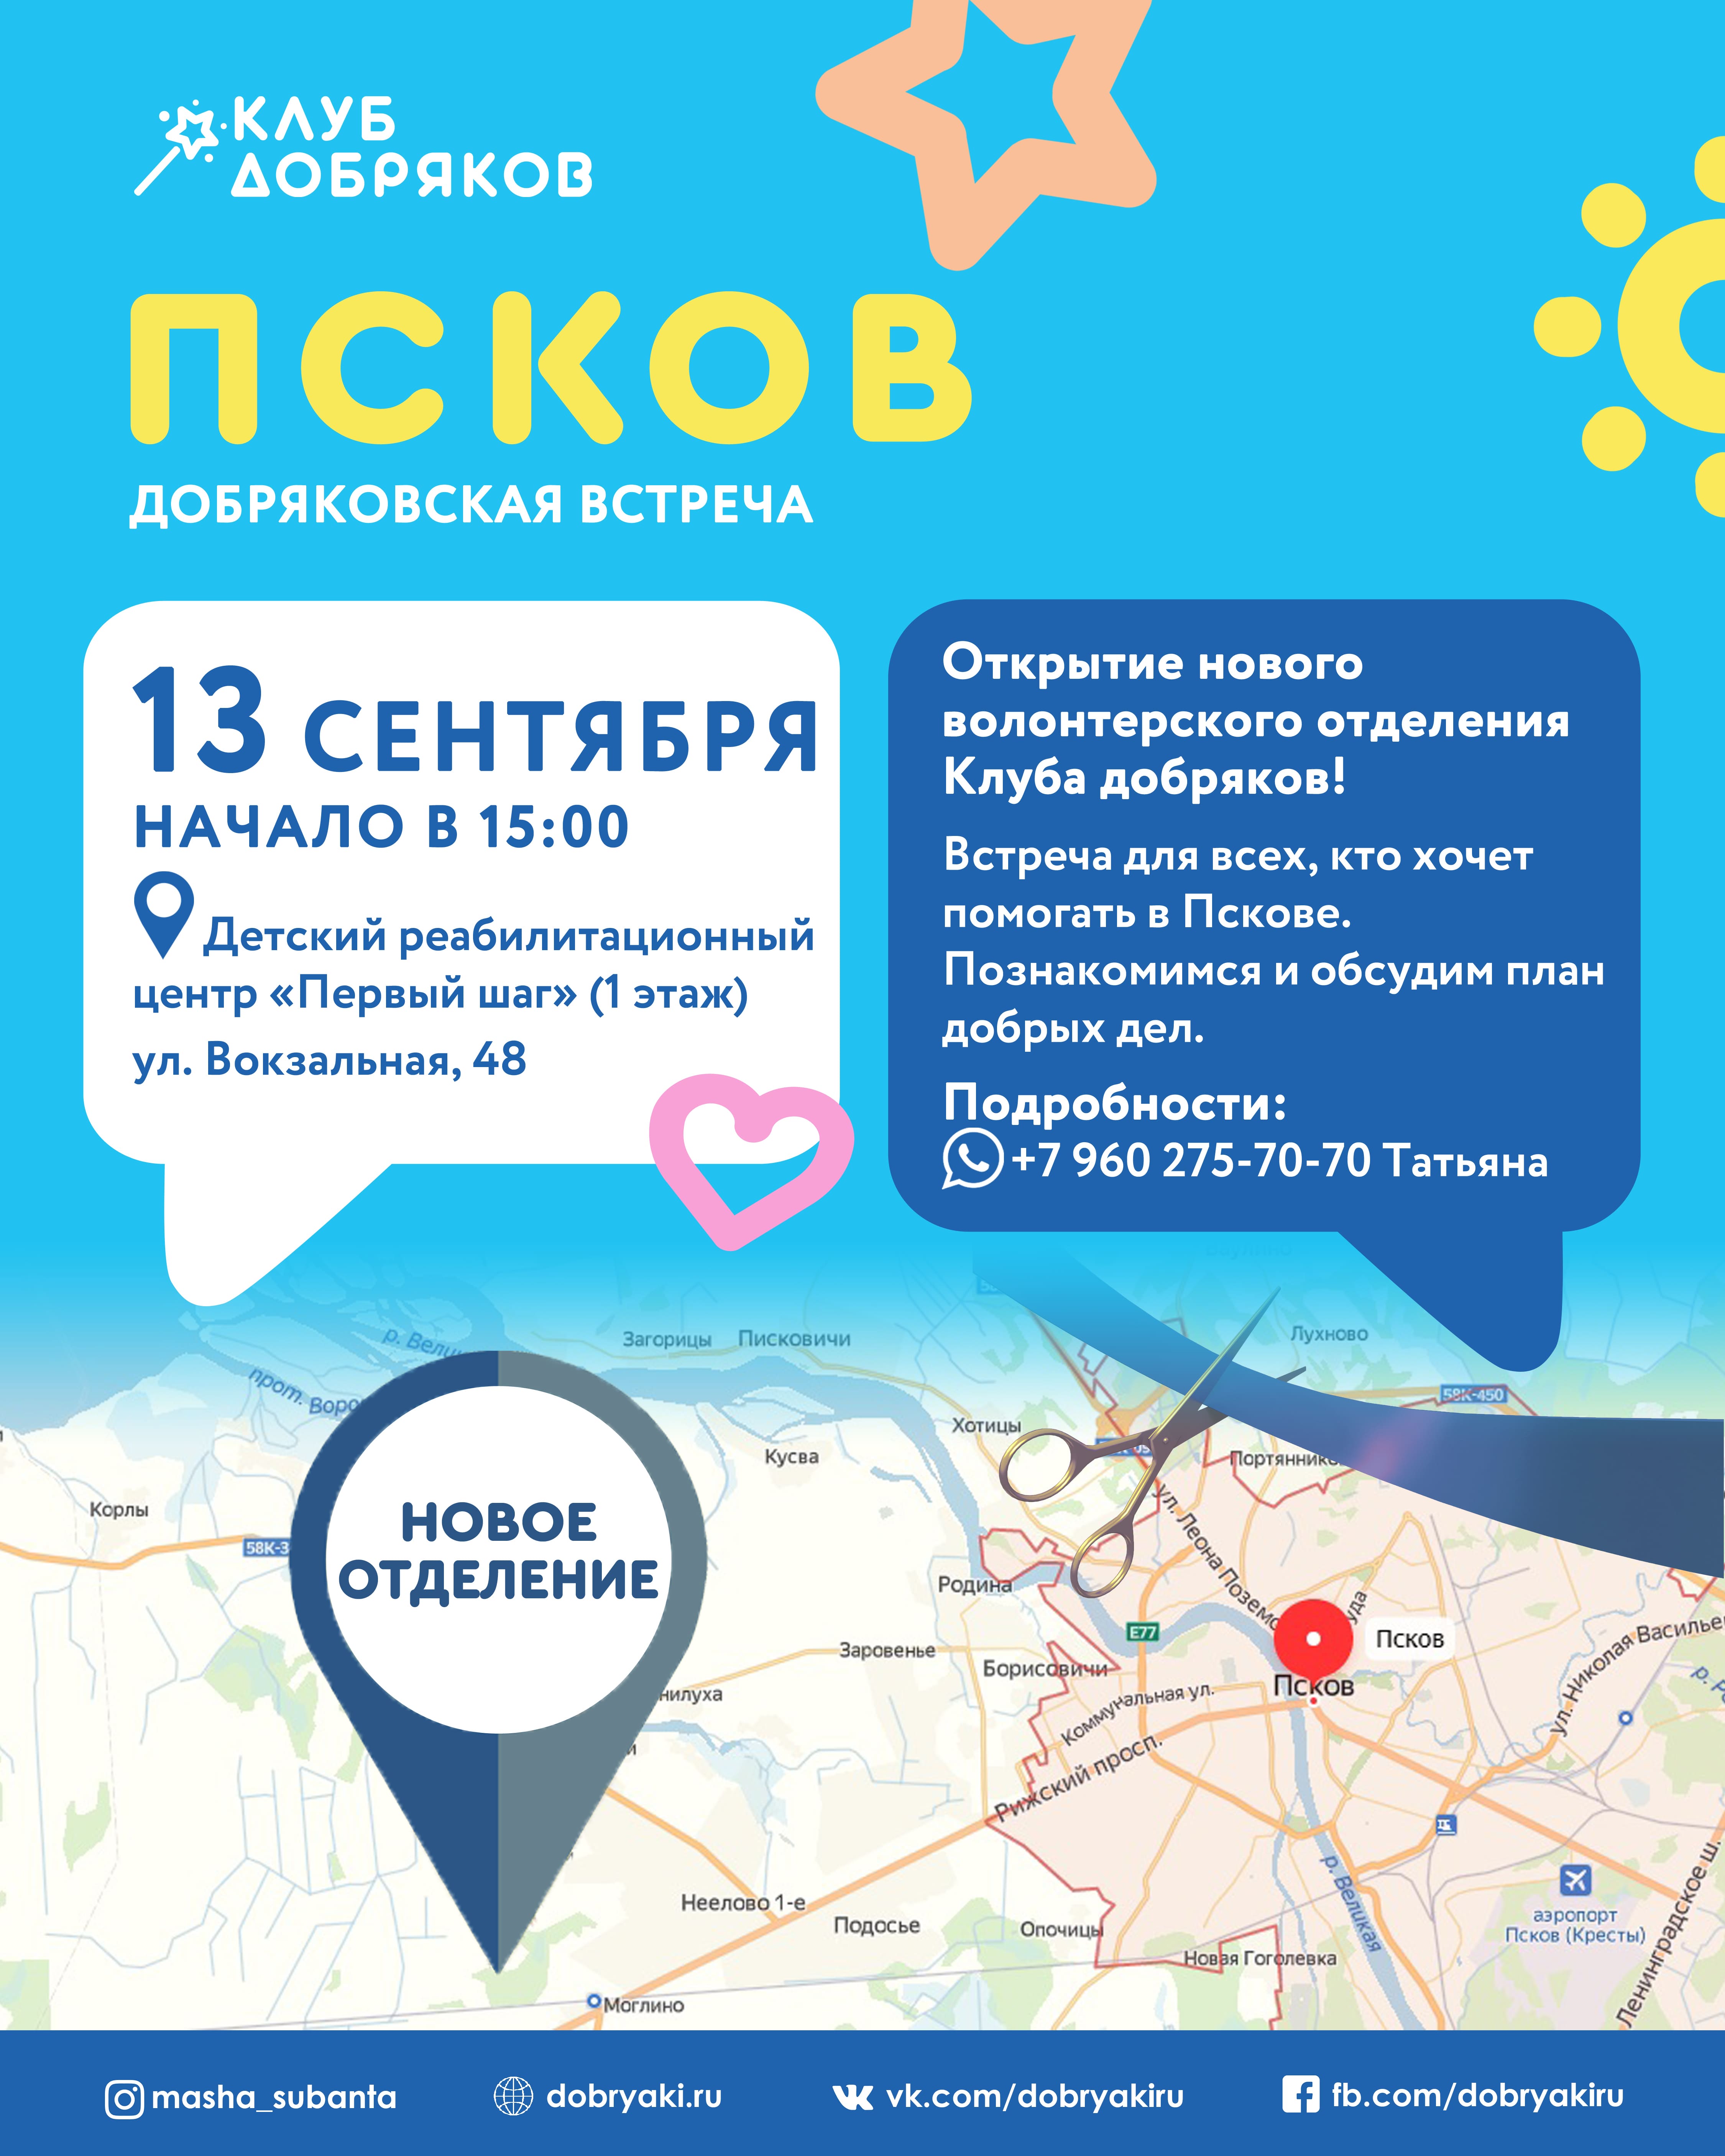 В Пскове появится волонтерское отделение Клуба добряков